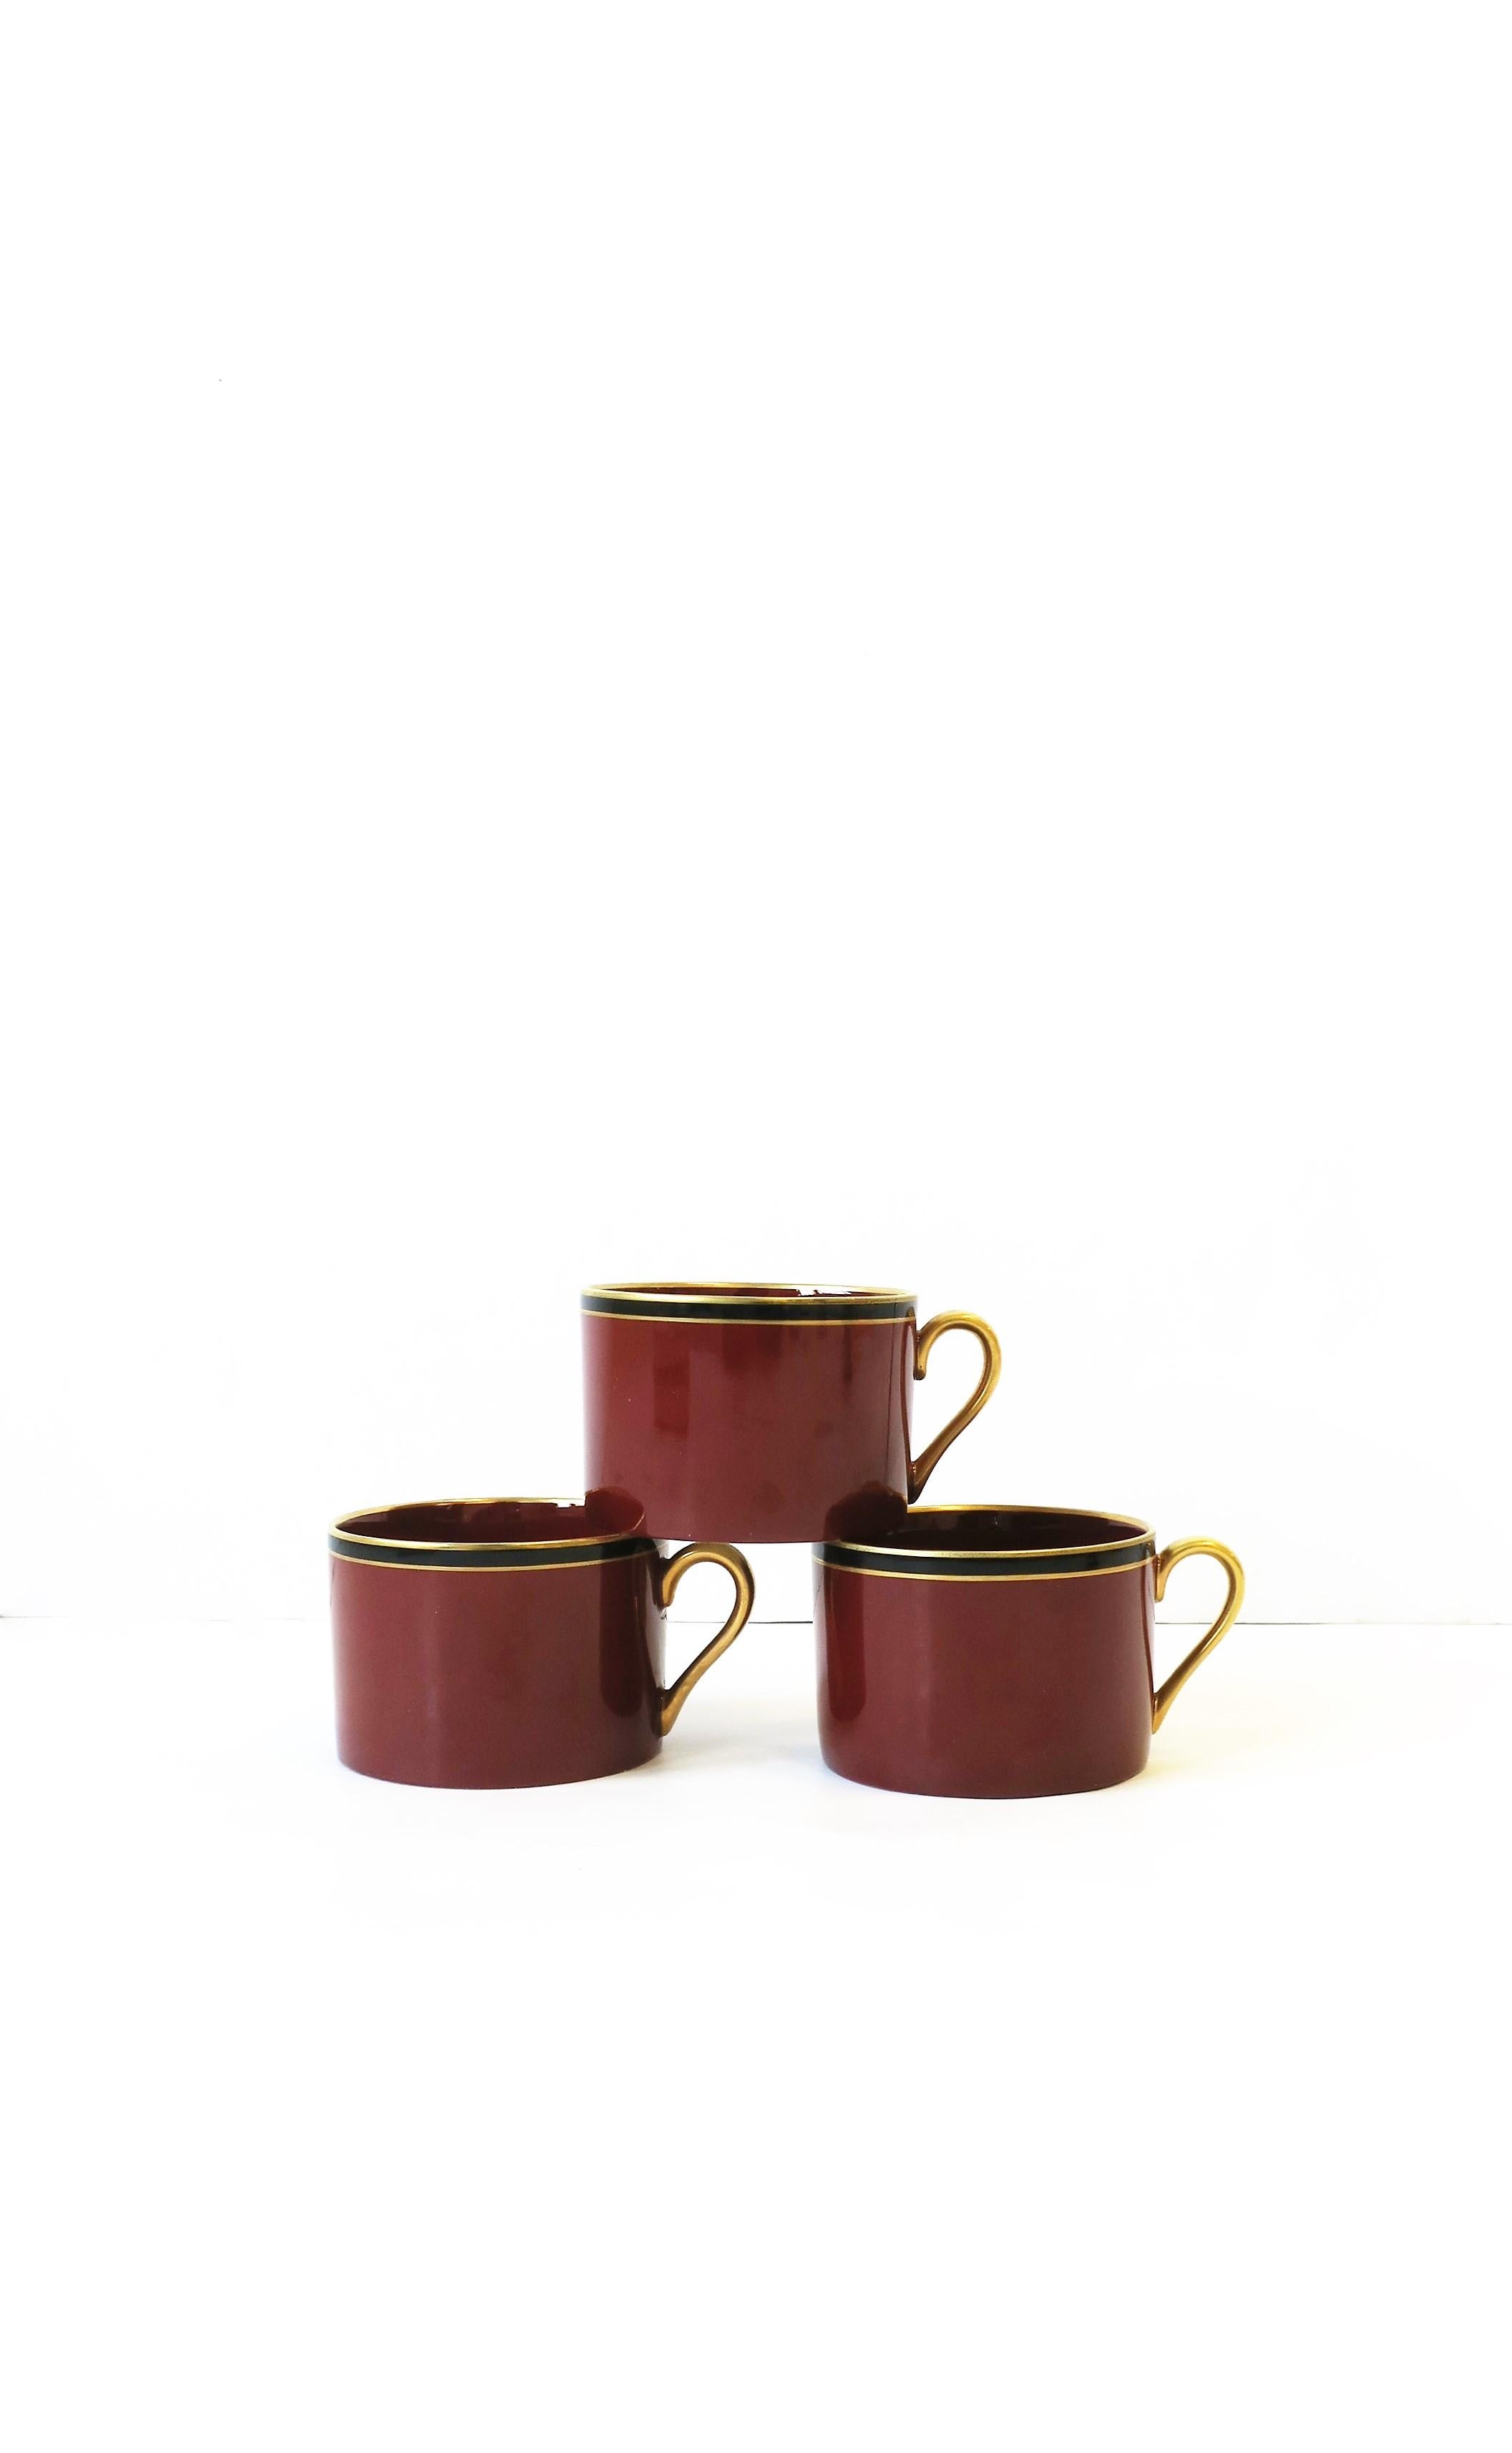 Ein schickes Set von drei (3) Vintage-Kaffee- oder Teetassen aus bordeauxrotem, goldenem und schwarzem Porzellan, Mitte des 20. Jahrhunderts, 1967. 

Beistelltische gezeigt in Bildsuche 1stDibs ref. #s: LU1314221845702, LU1314221786072